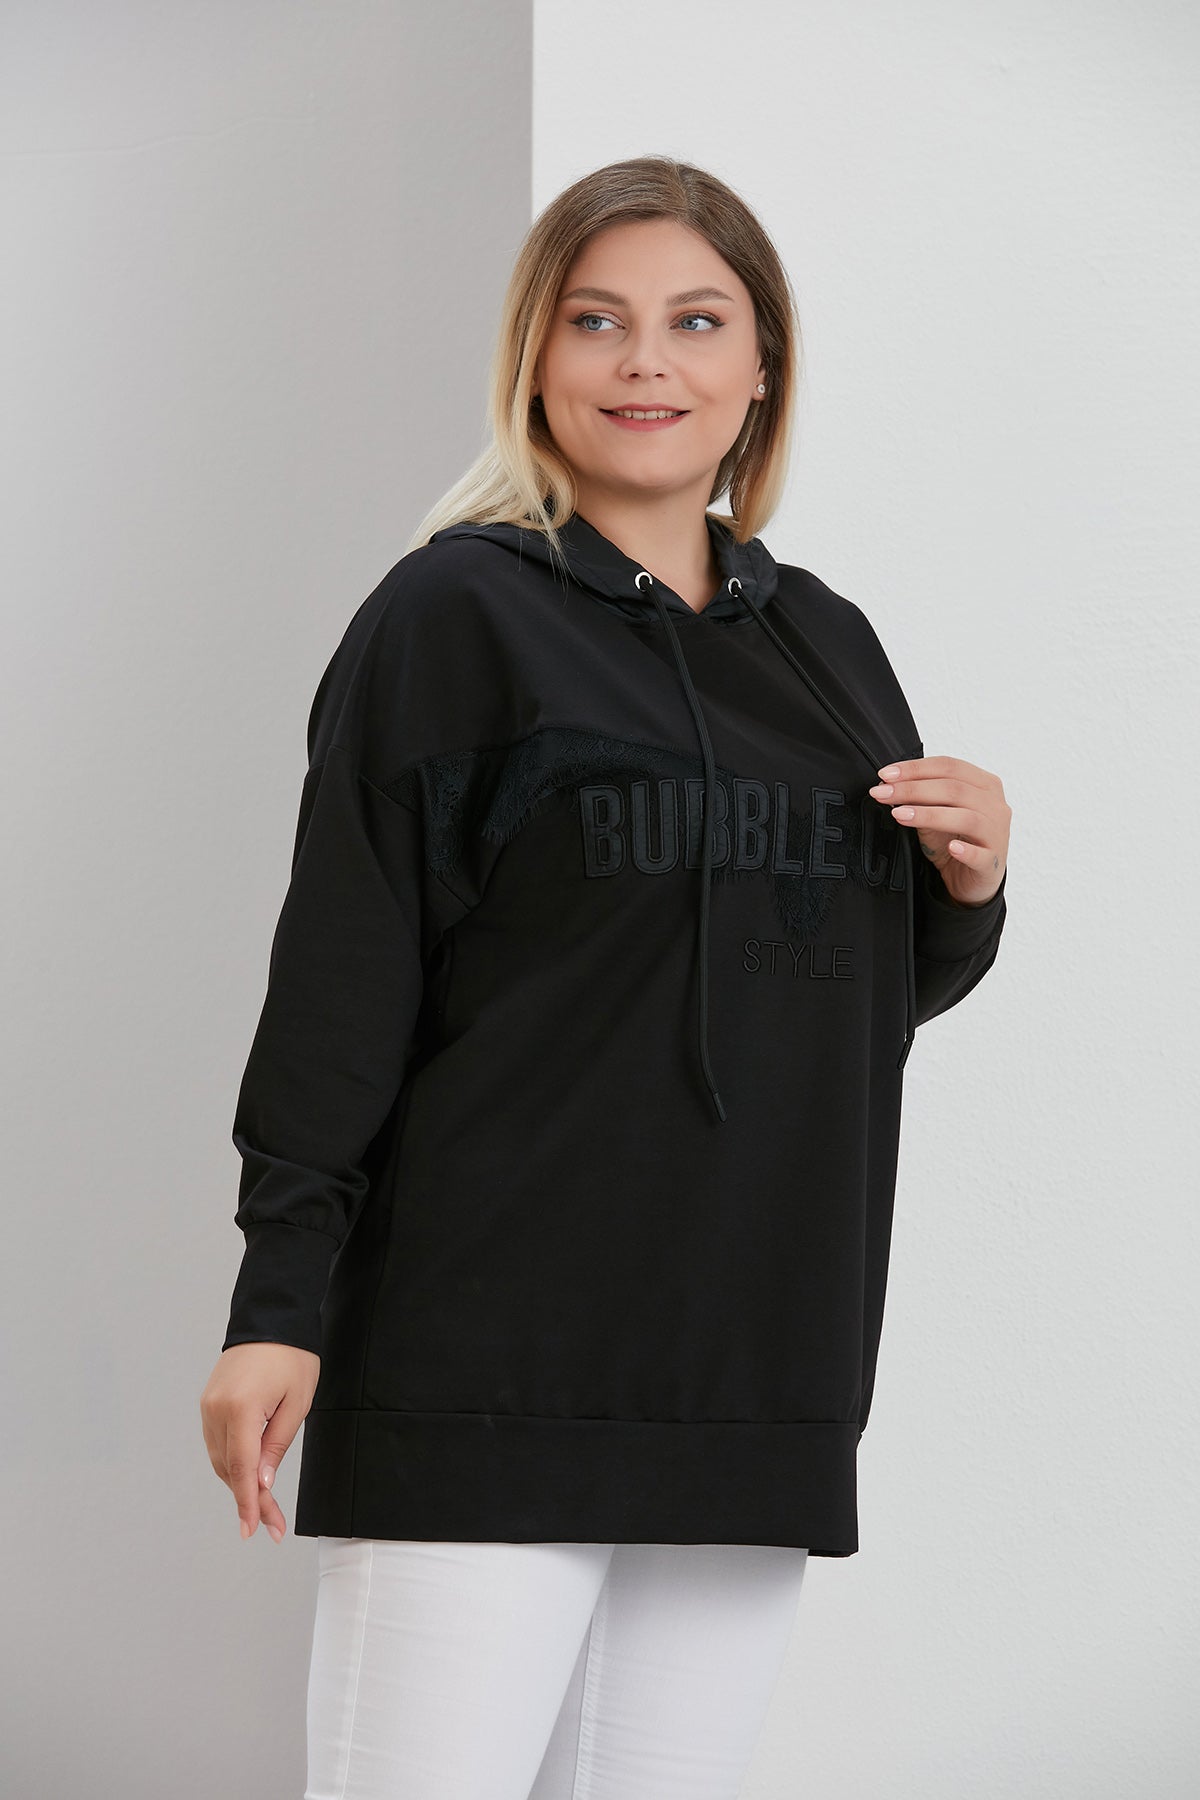 Bluzon marime mare Bubble Chic cu fas si dantela - negru